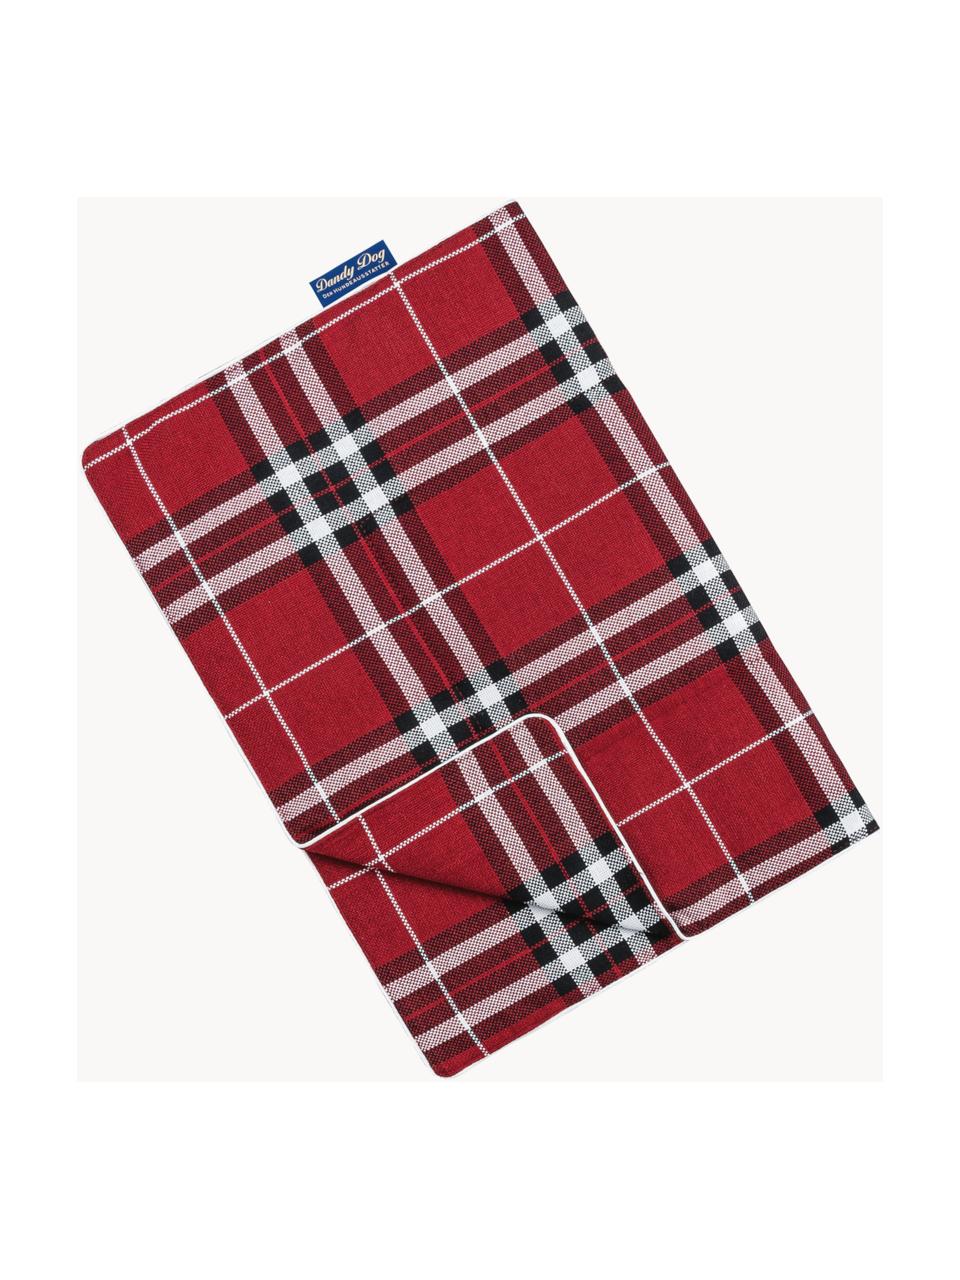 Hundedecke Highlands, verschiedene Grössen, Bezug: 100 % Polyester Der strap, Rot, Schwarz, Weiss, B 60 x L 80 cm